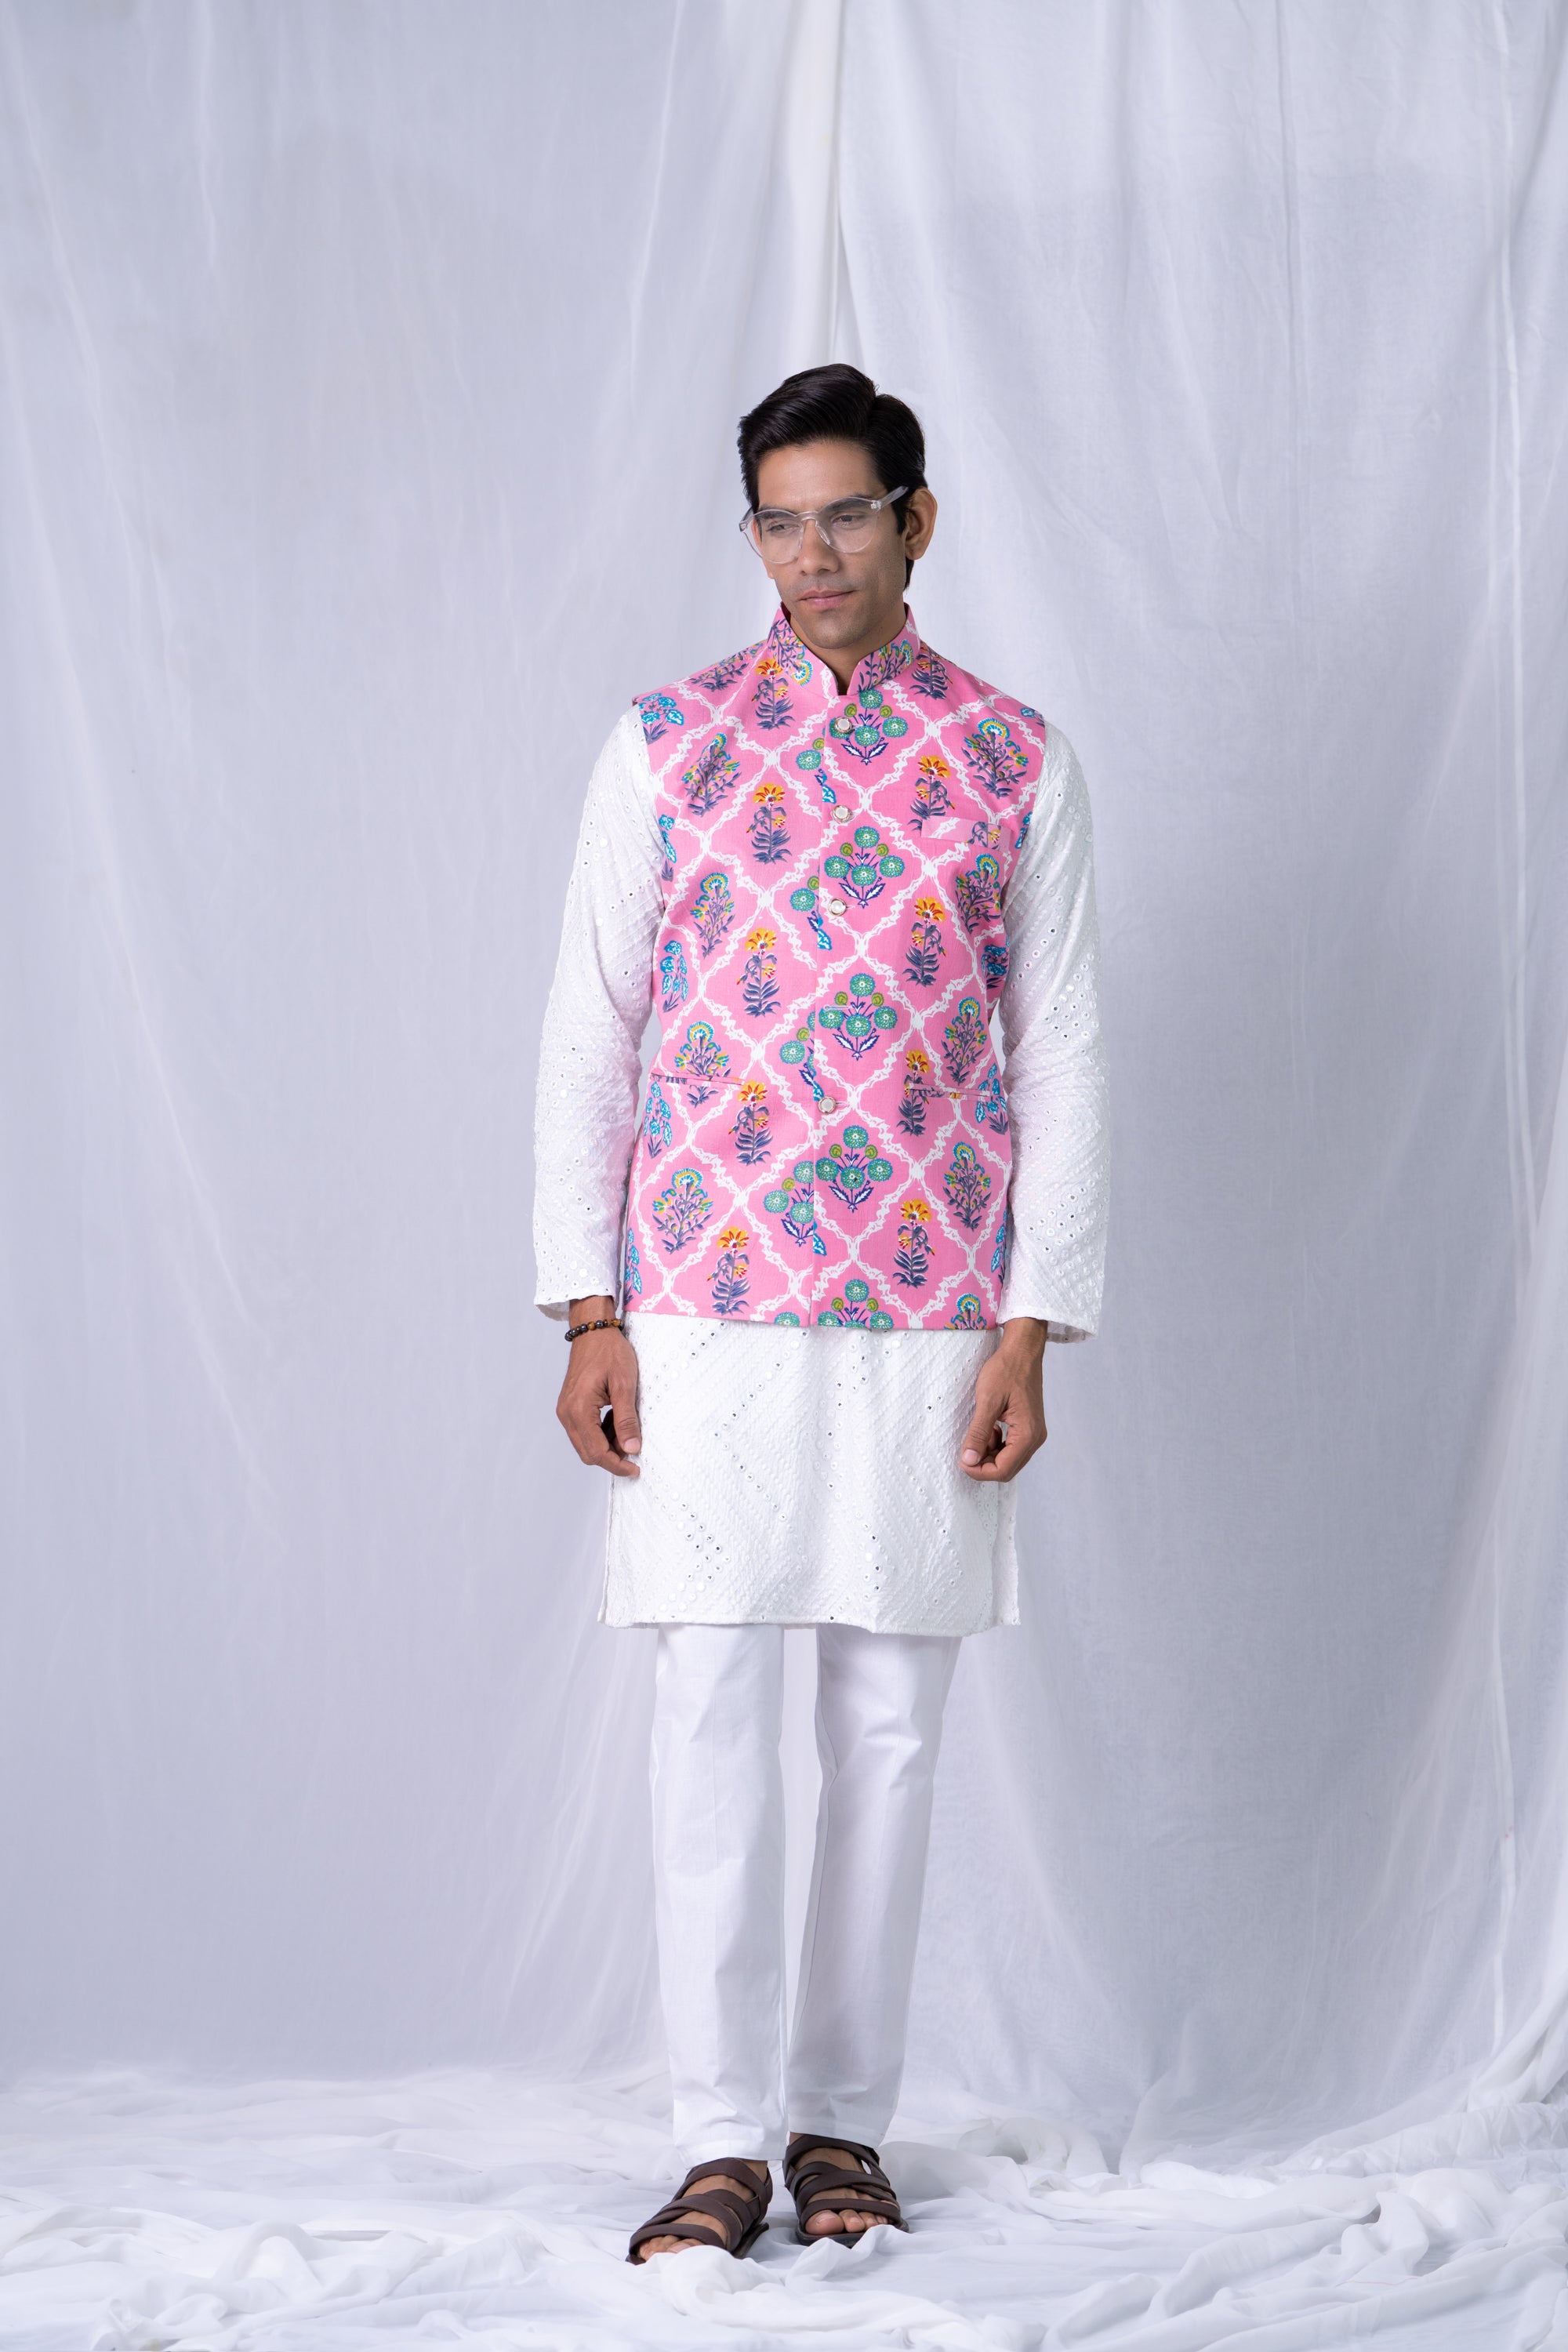 Firangi Yarn Cotton Block Printed Modi/Nehru Jacket Pink Bouquet For Haldi, Mehendi, Sangeet, Wedding, Diwali and More